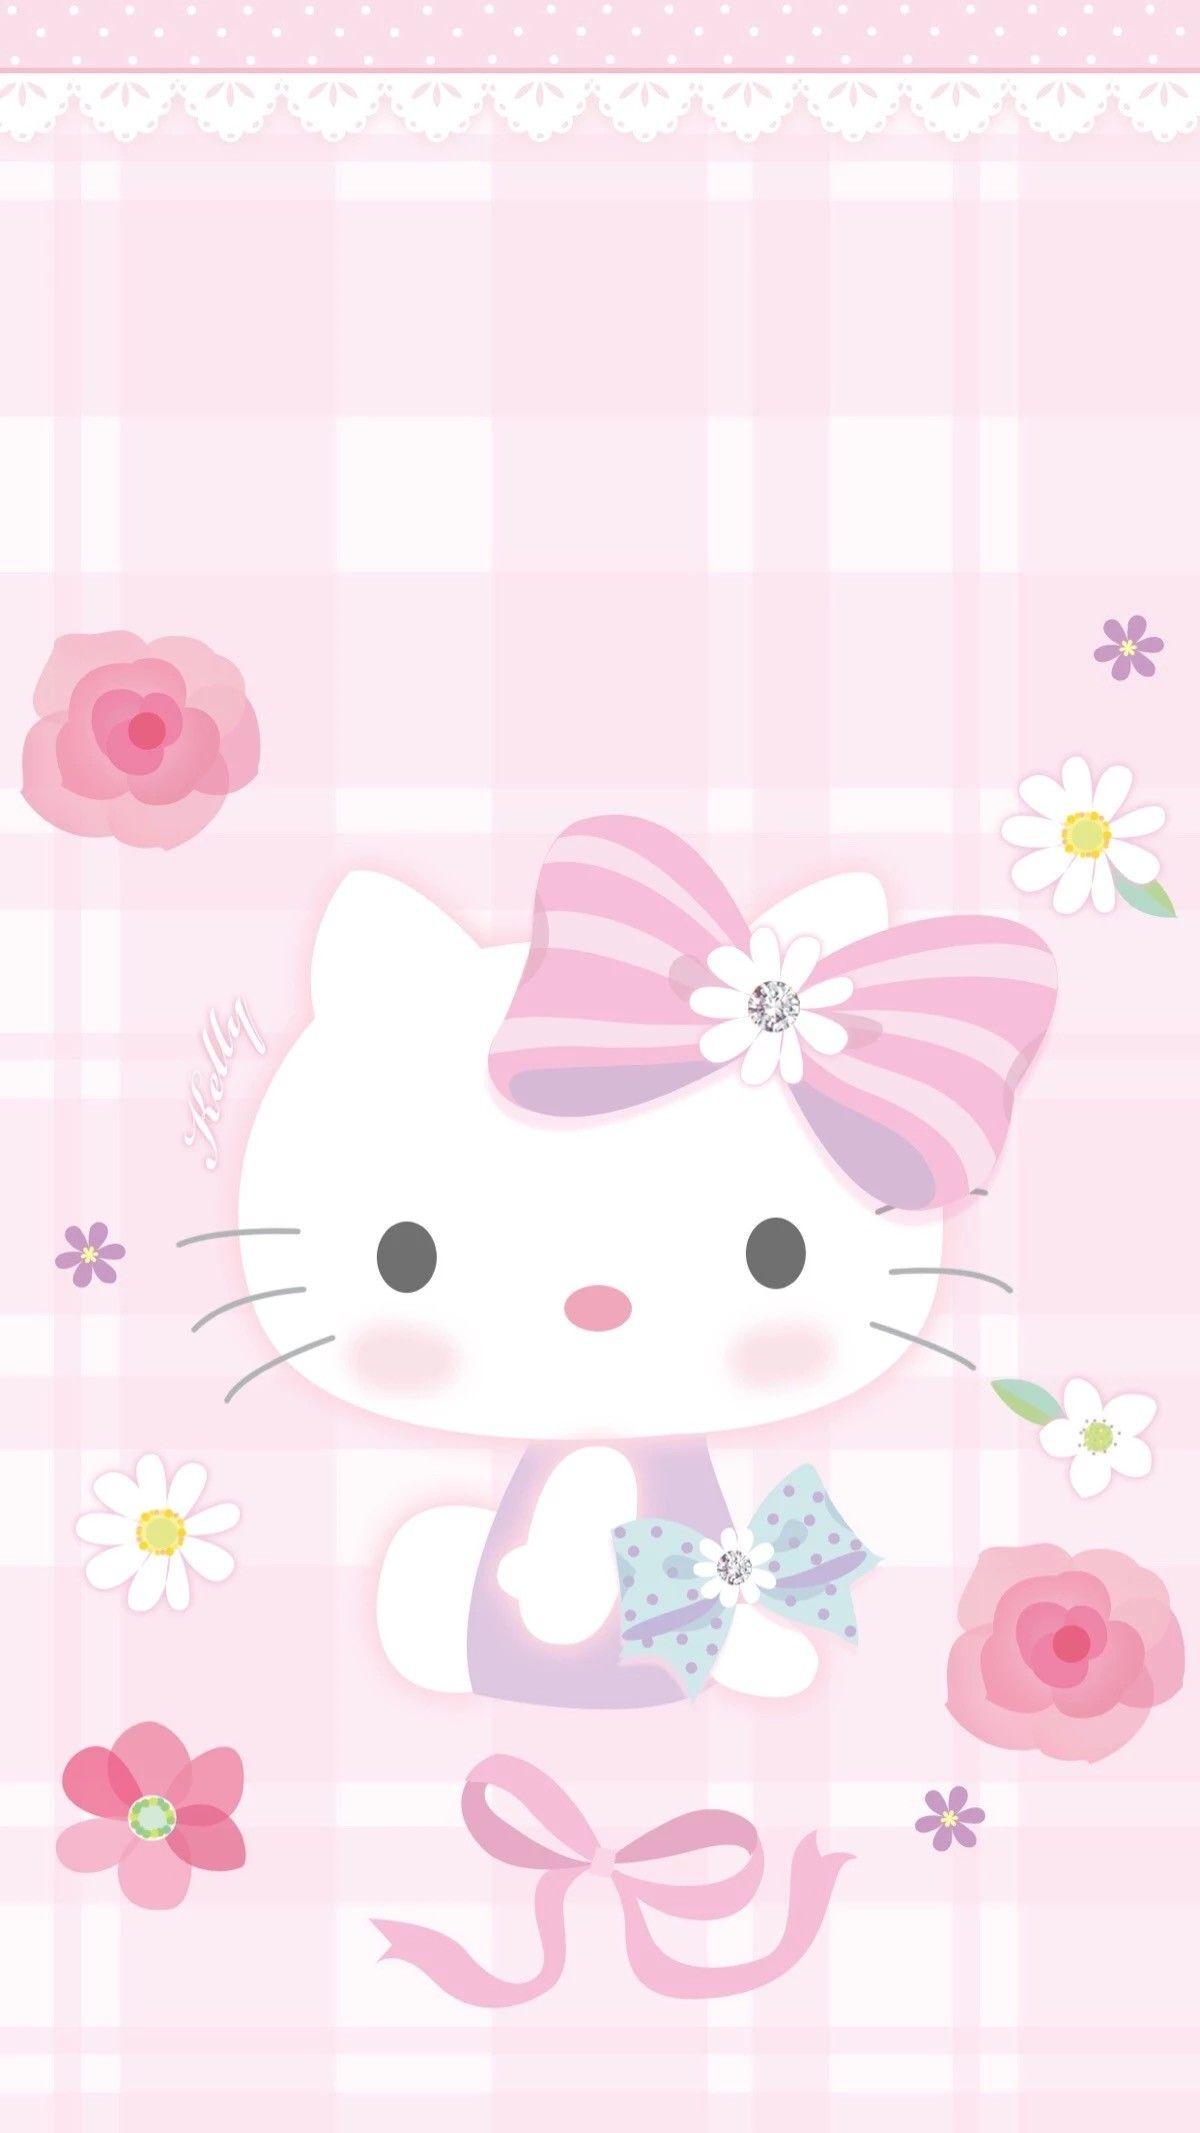 Hình ảnh Hello Kitty cute dễ thương và đẹp nhất dành cho các bạn gái   Trung Tâm Đào Tạo Việt Á